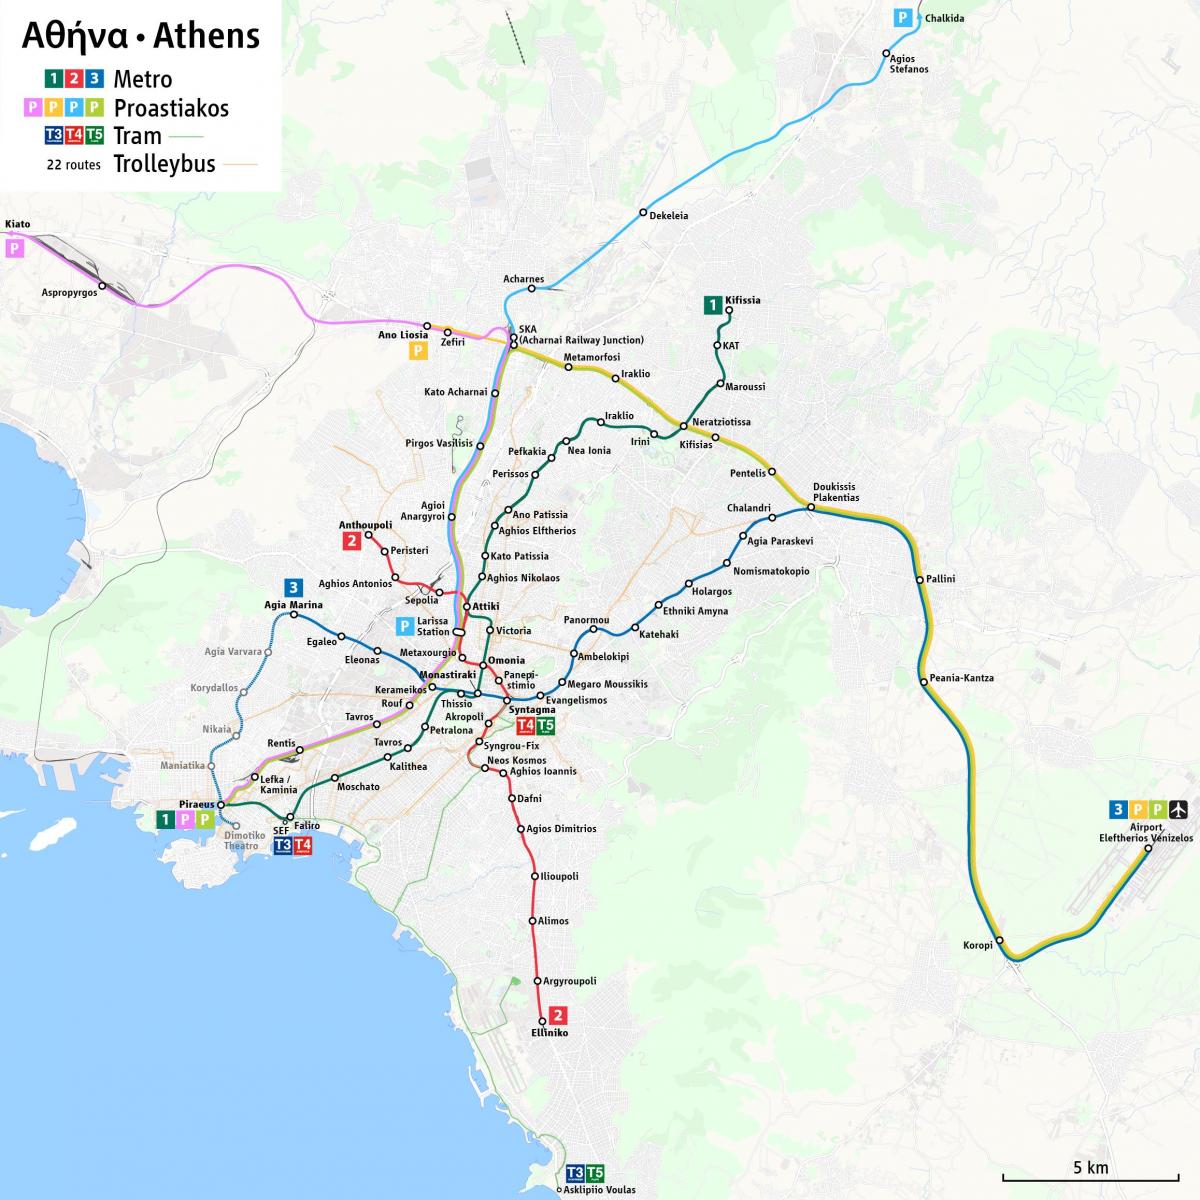 Plan des gares routières d'Athènes